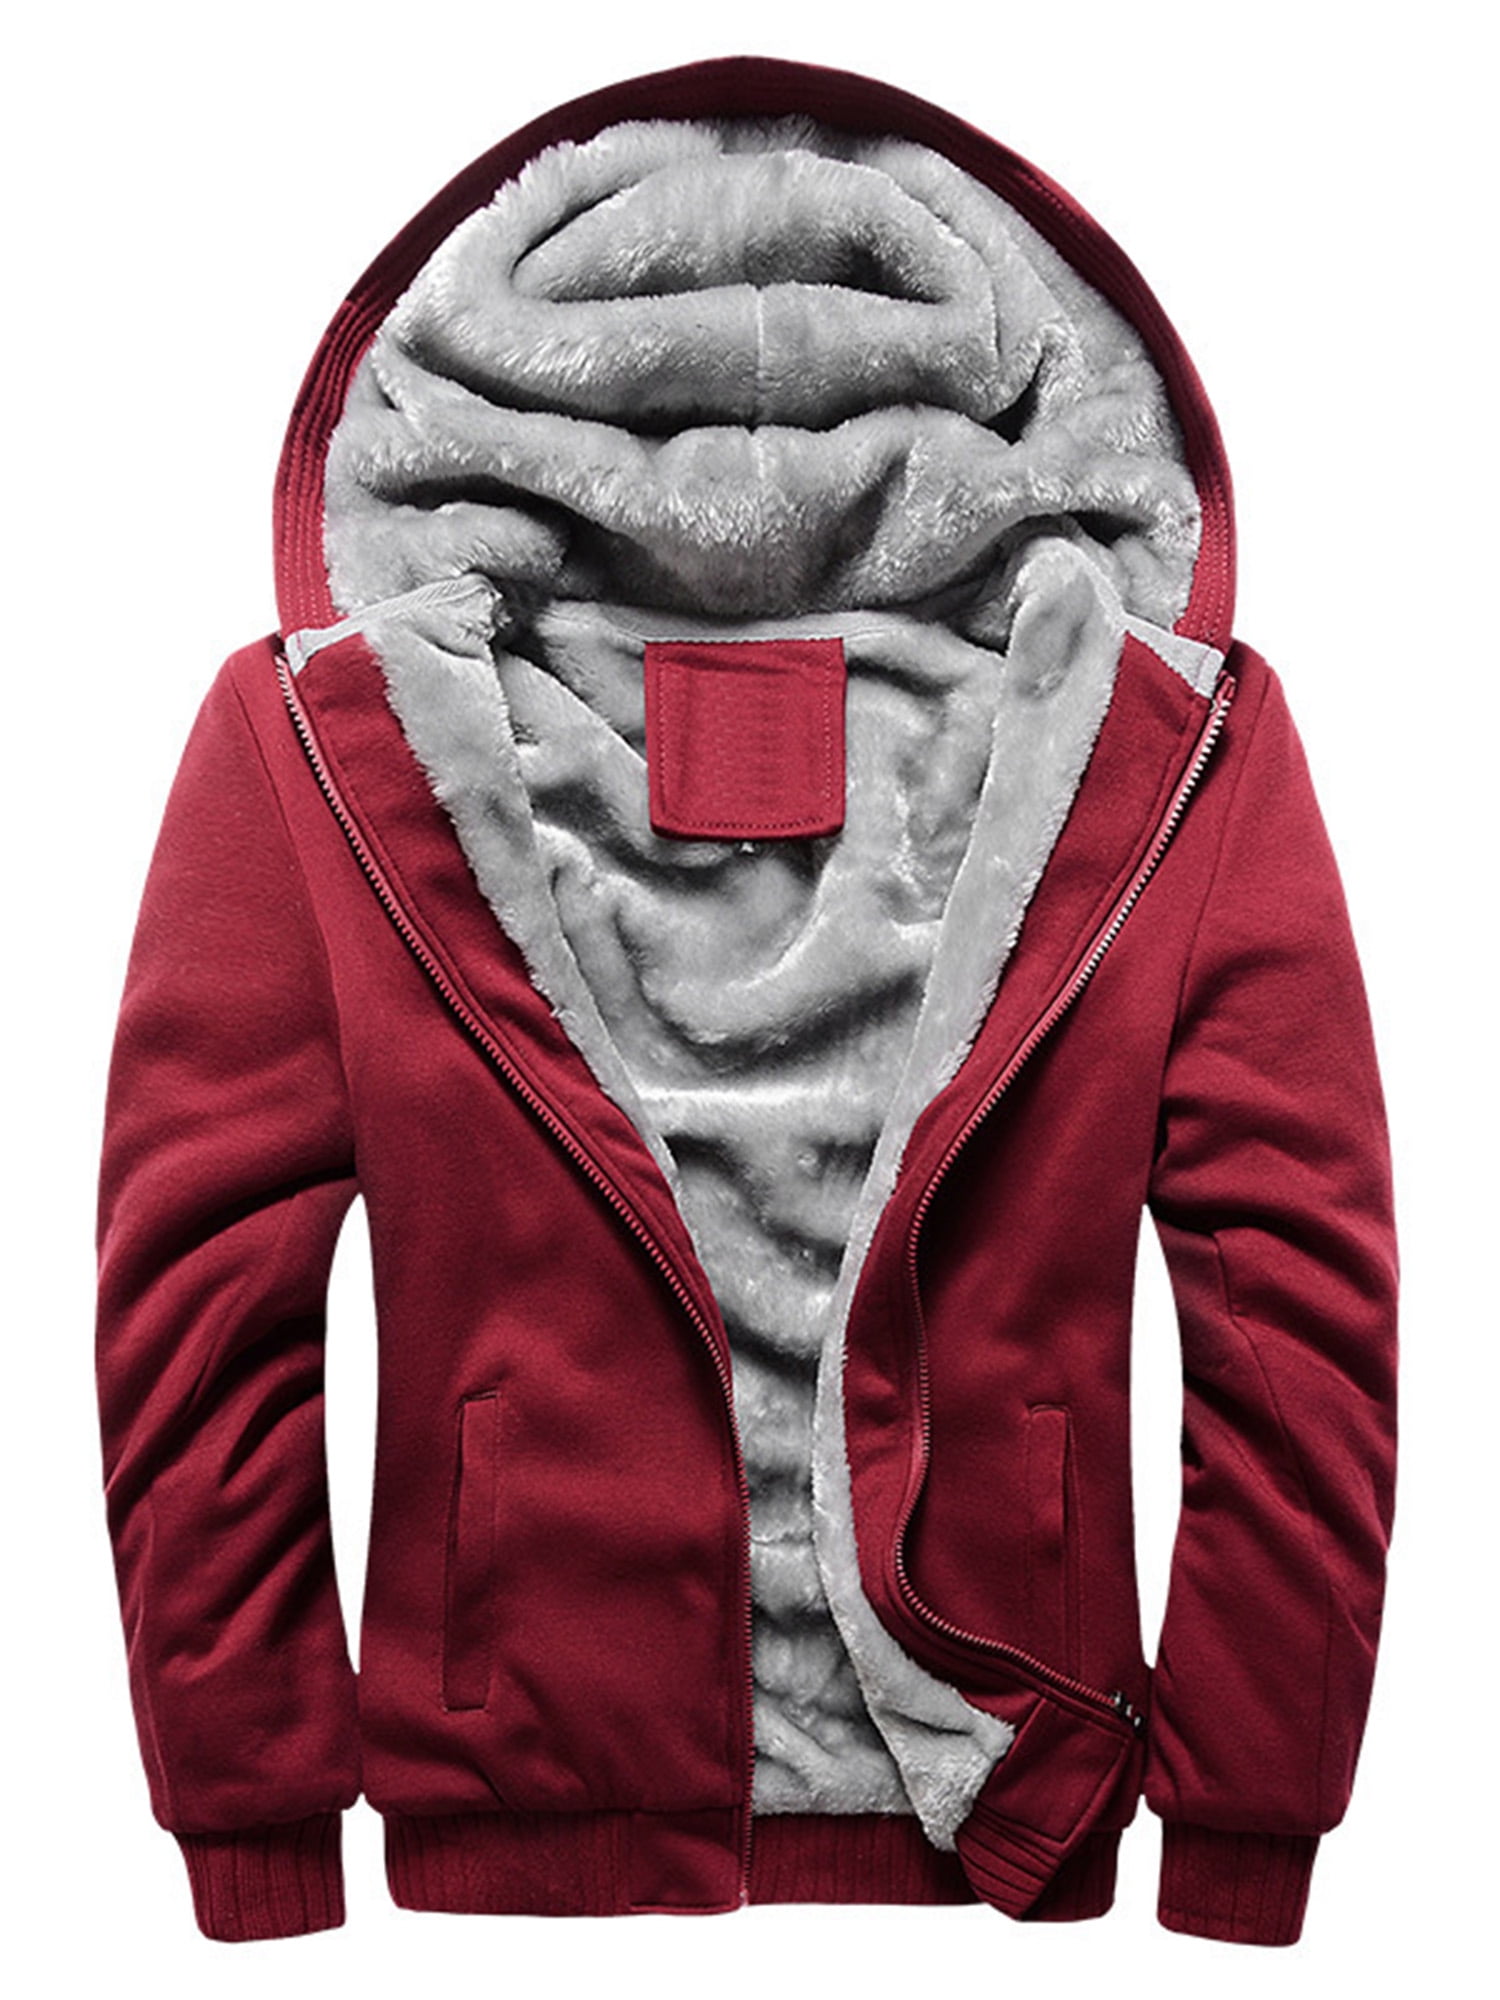 Men's Thick Warm Fleece Lined Hooded Hoodie Winter Zip Up Coat Jacket Sweatshirt